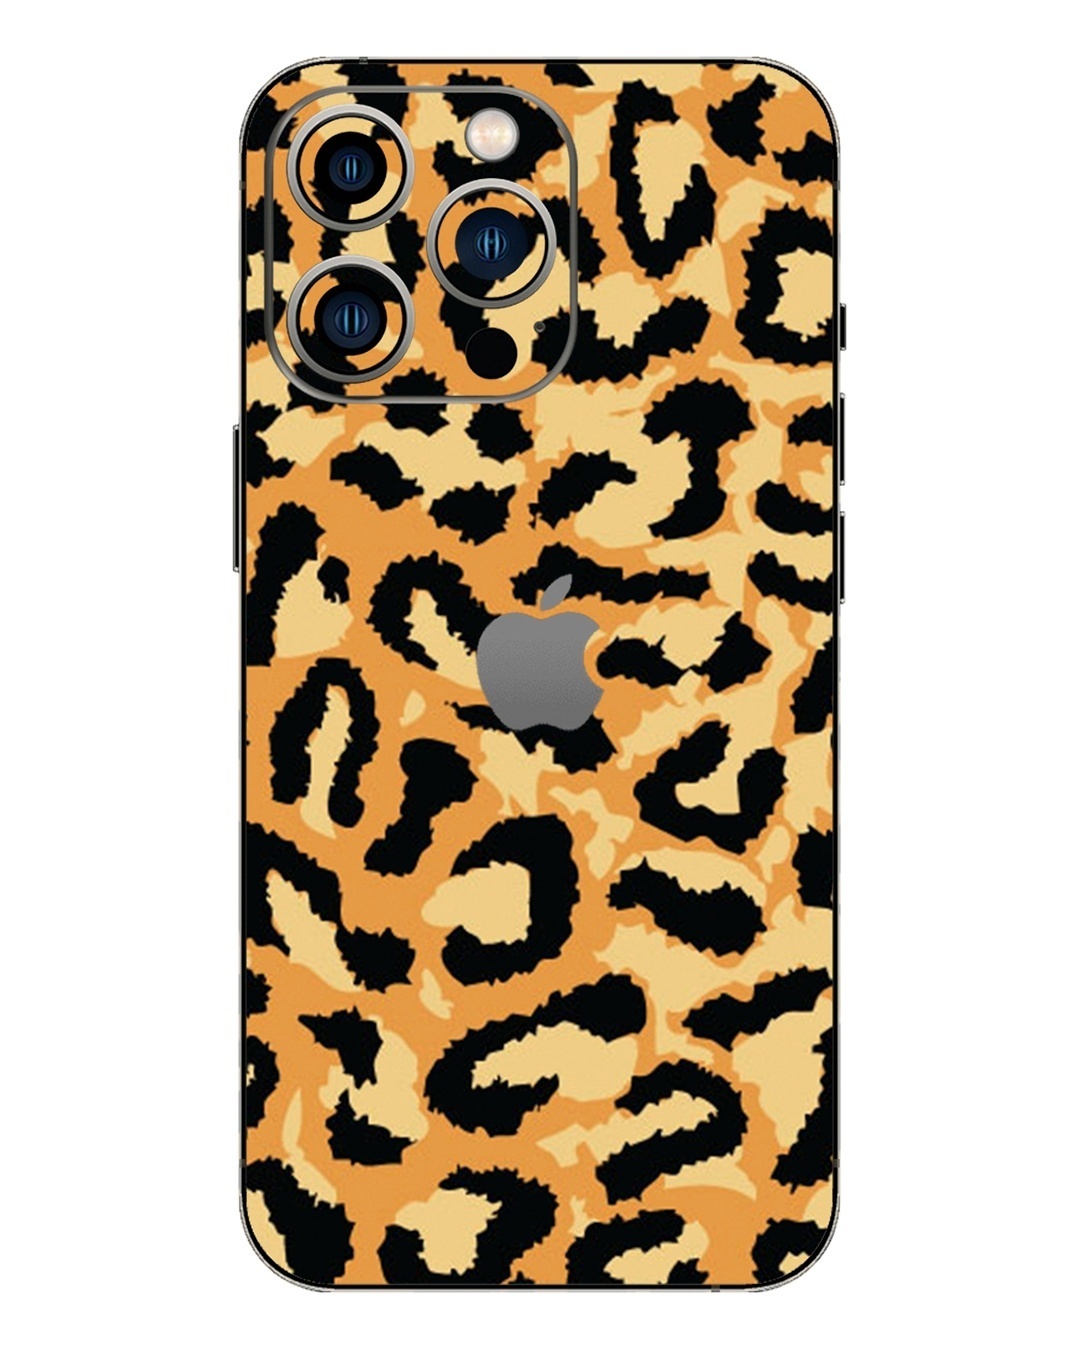 https://images.bewakoof.com/t1080/yellow-cheetah-camo-printed-mobile-skin-for-apple-iphone-13-pro-max-615930-1693243848-1.jpg